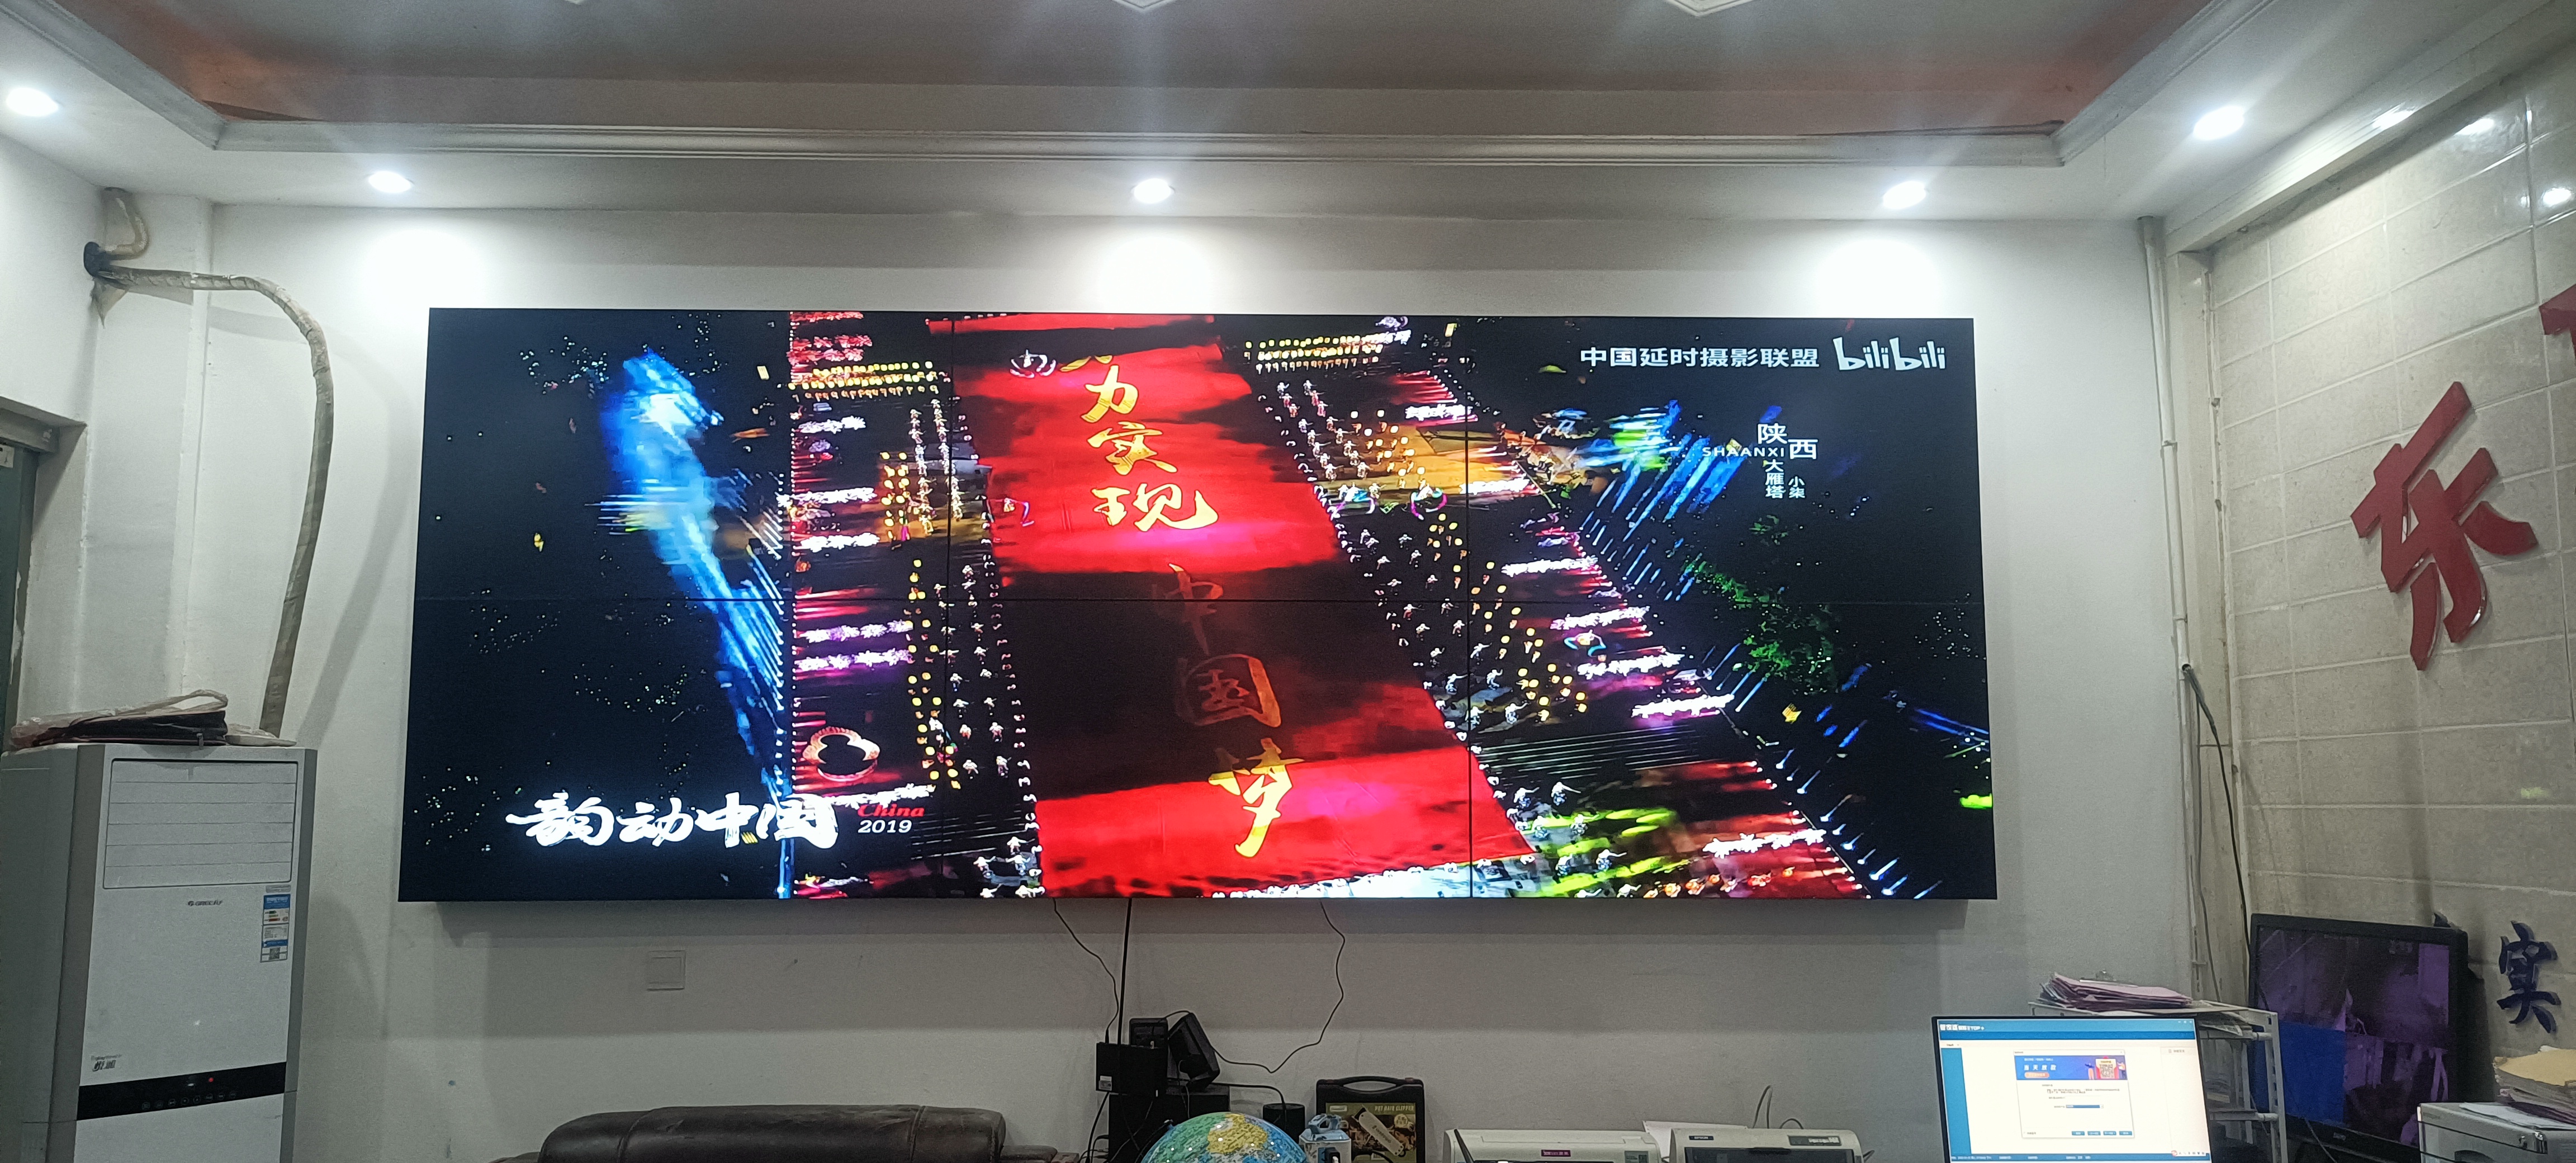 55寸3.5mm液晶拼接屏-前维护支架-重庆市九龙坡区白市驿镇安装展示